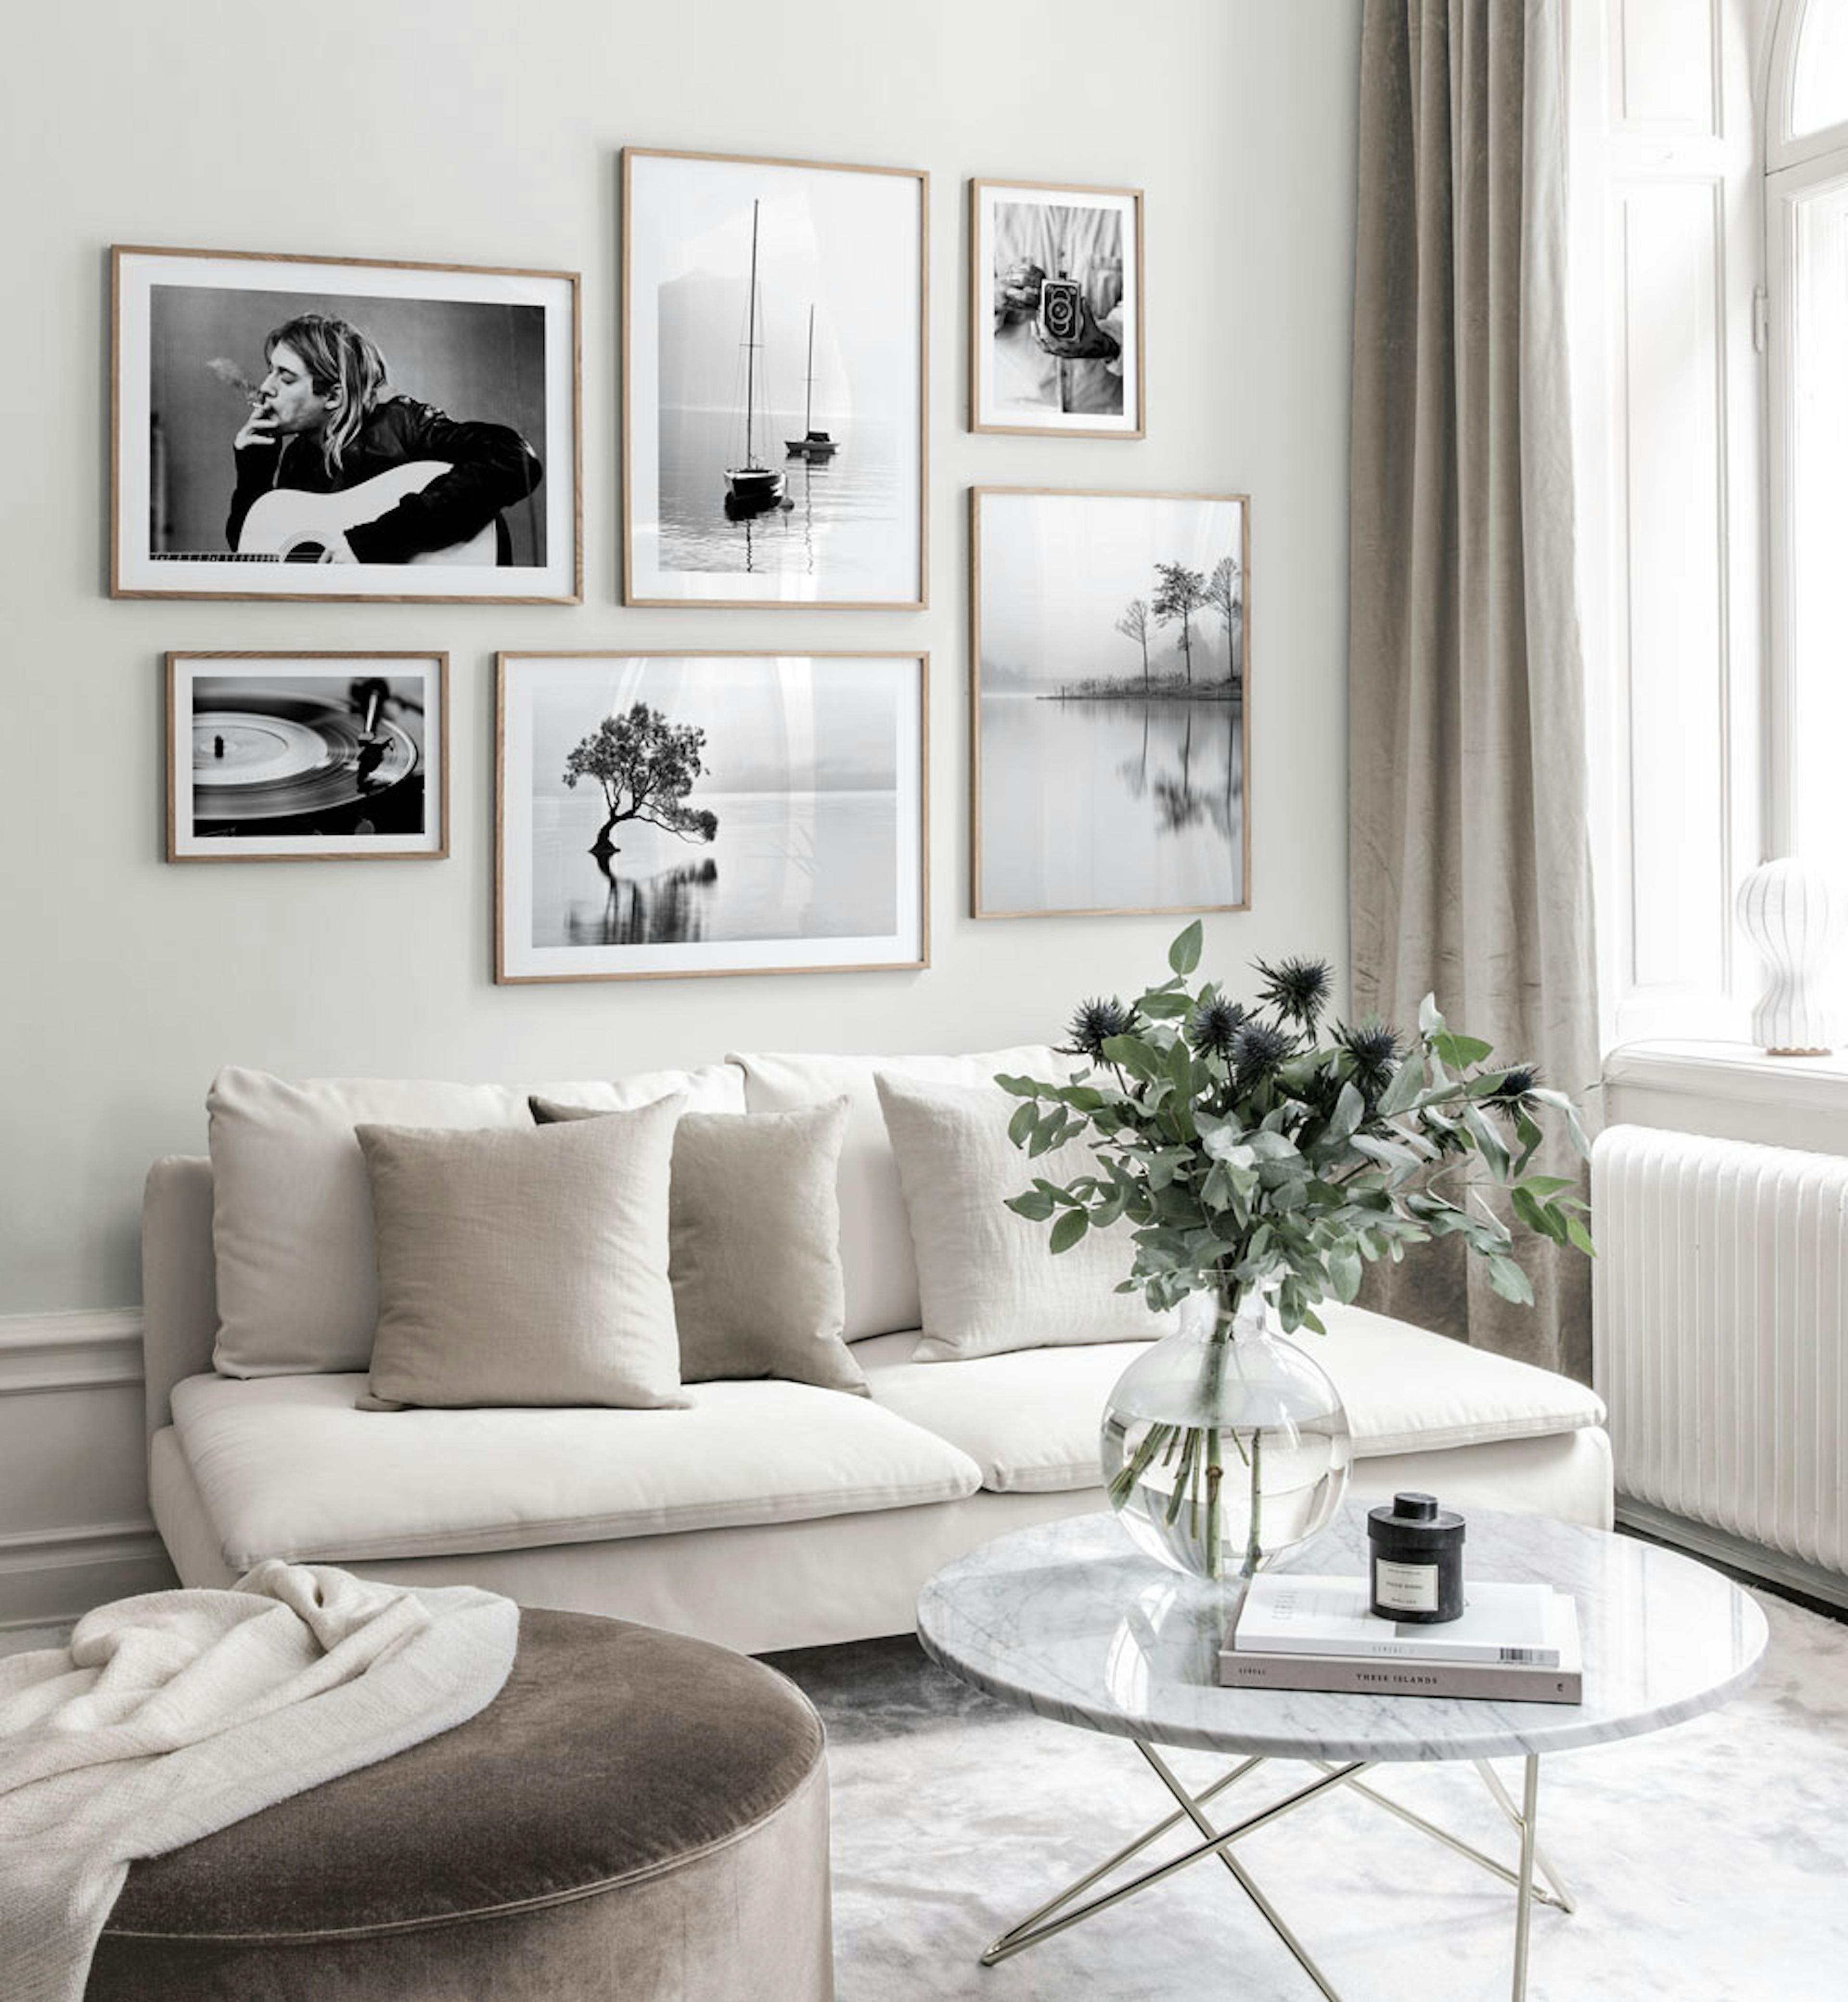 Bildergalerie im skandinavischem Design mit schwarzweißen Postern